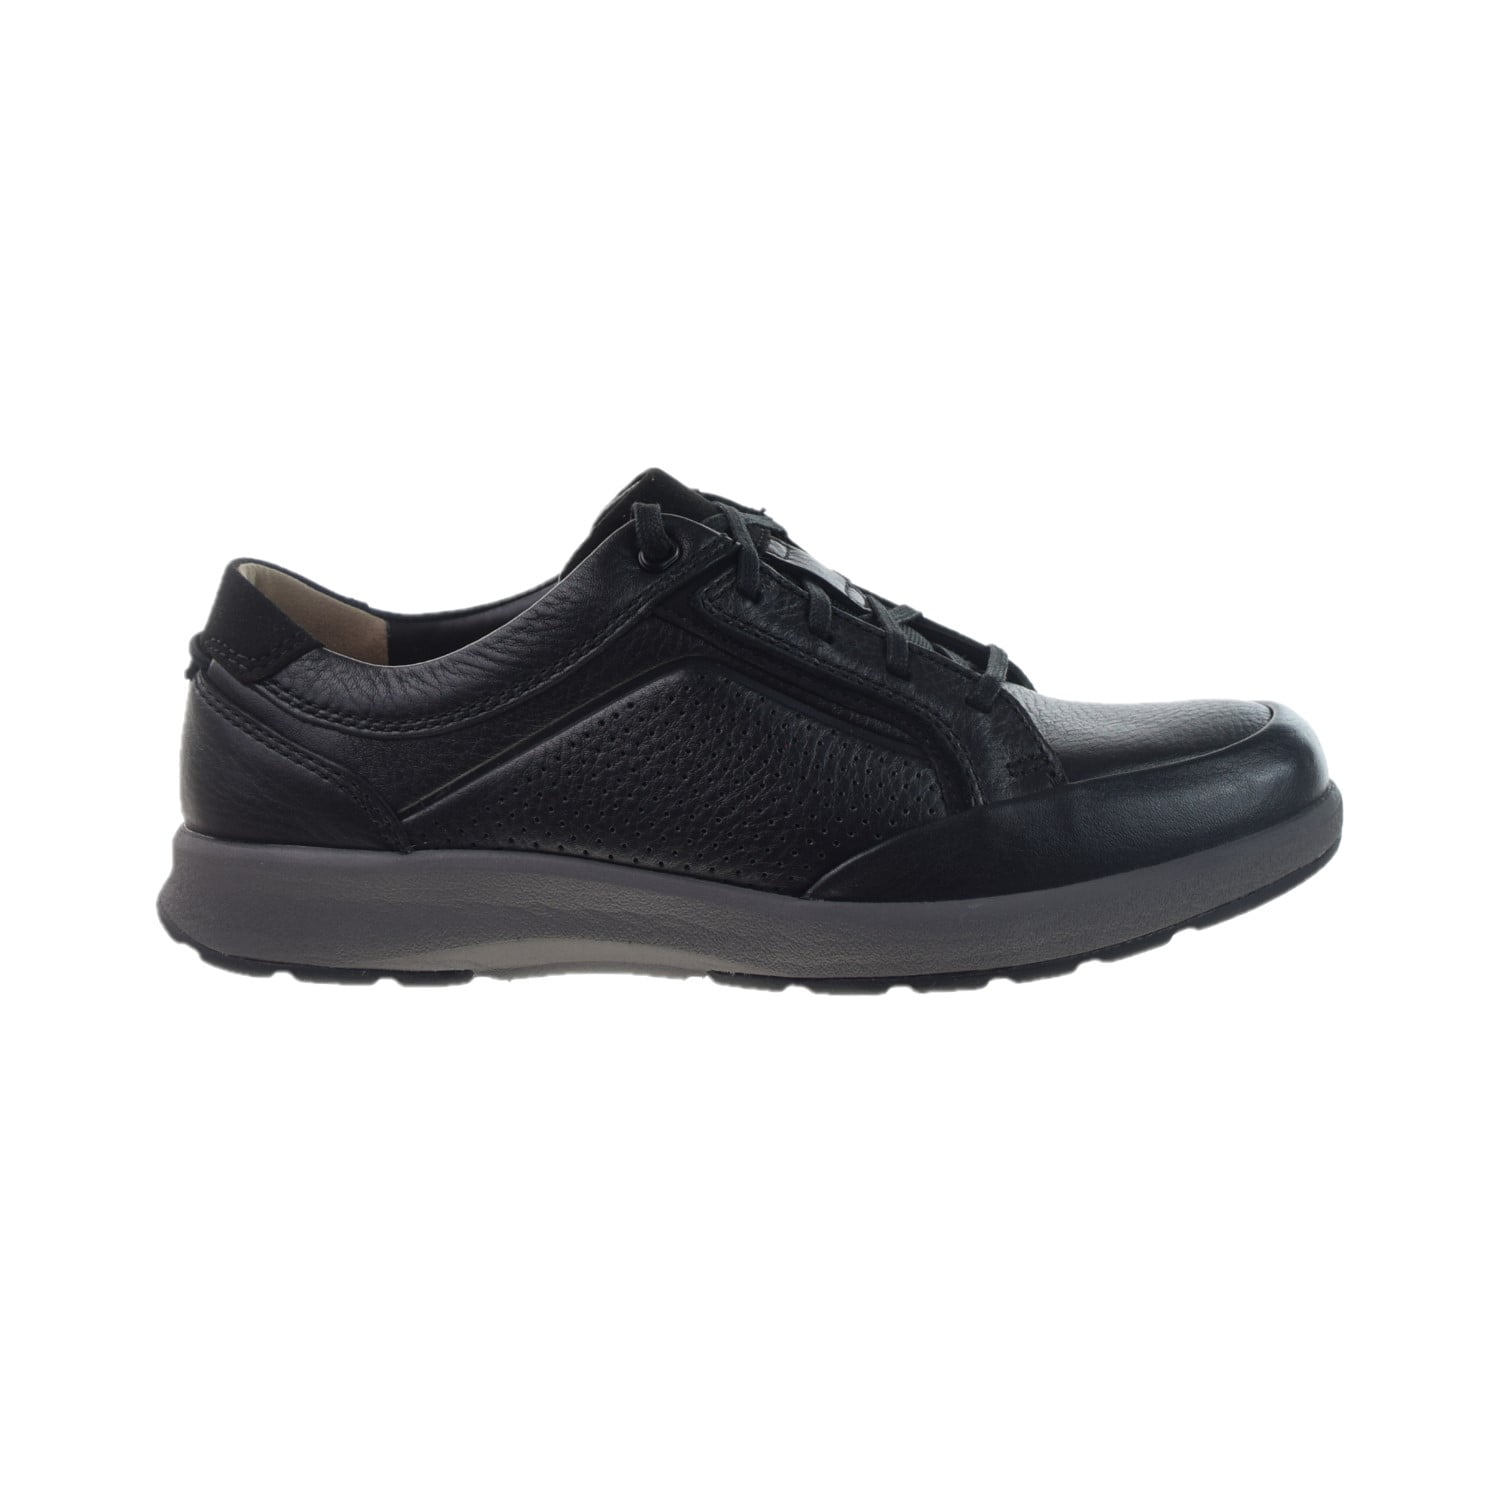 Clarks Un Trail Form Men's Shoes Black 26146641 - Walmart.com